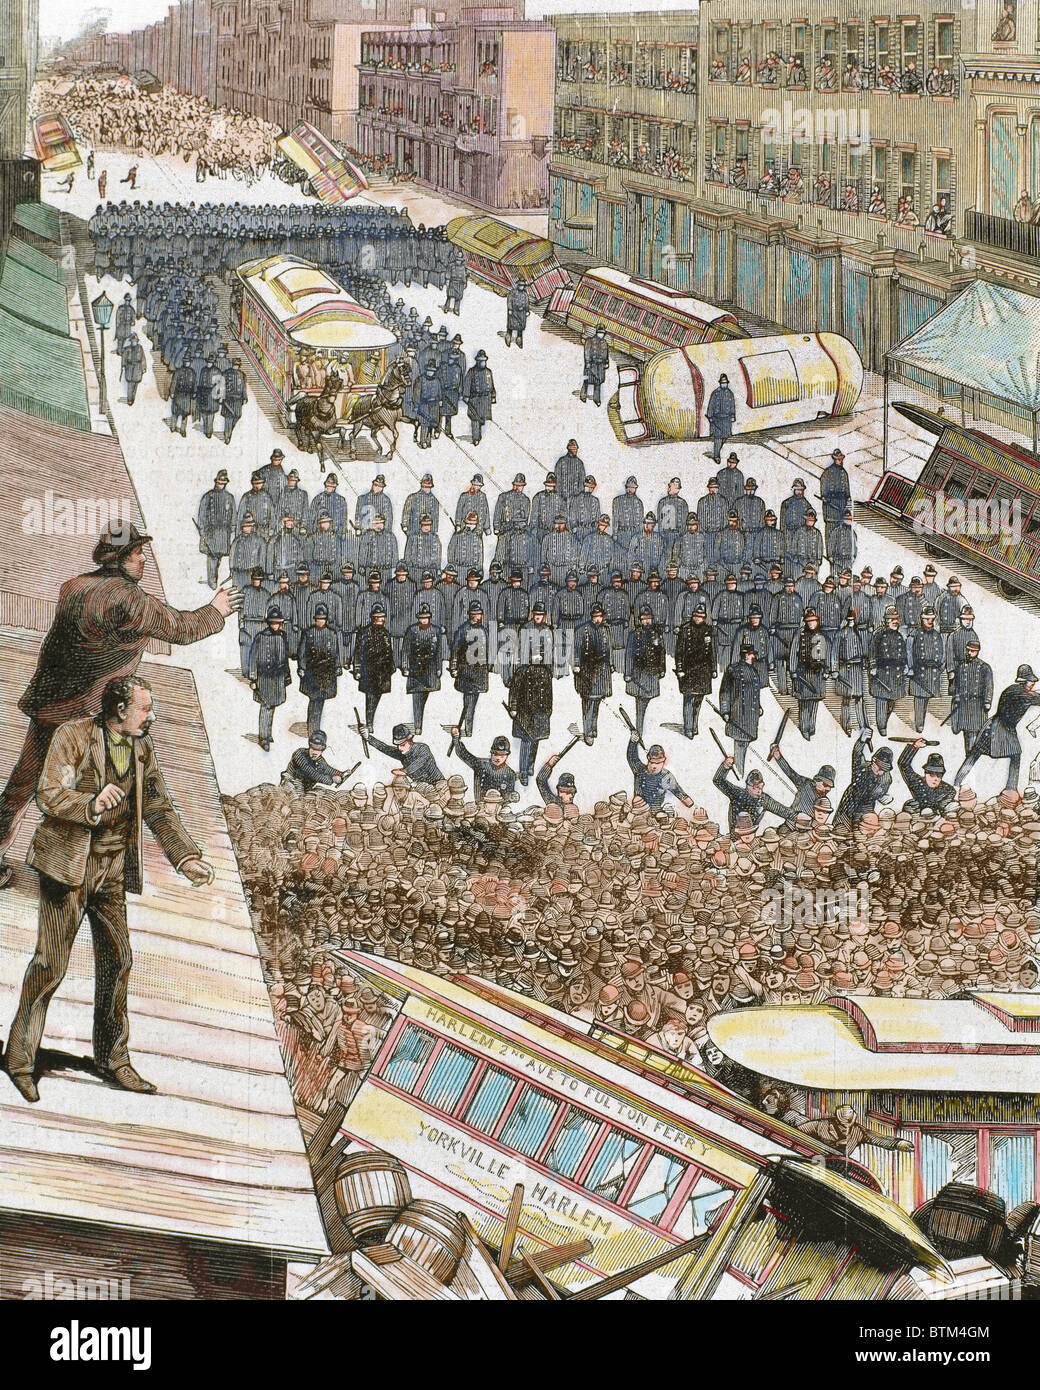 Les agents de police dispersant la grève des employés du tramway à New York, le 4 mars 1886. Gravure en couleur. Banque D'Images